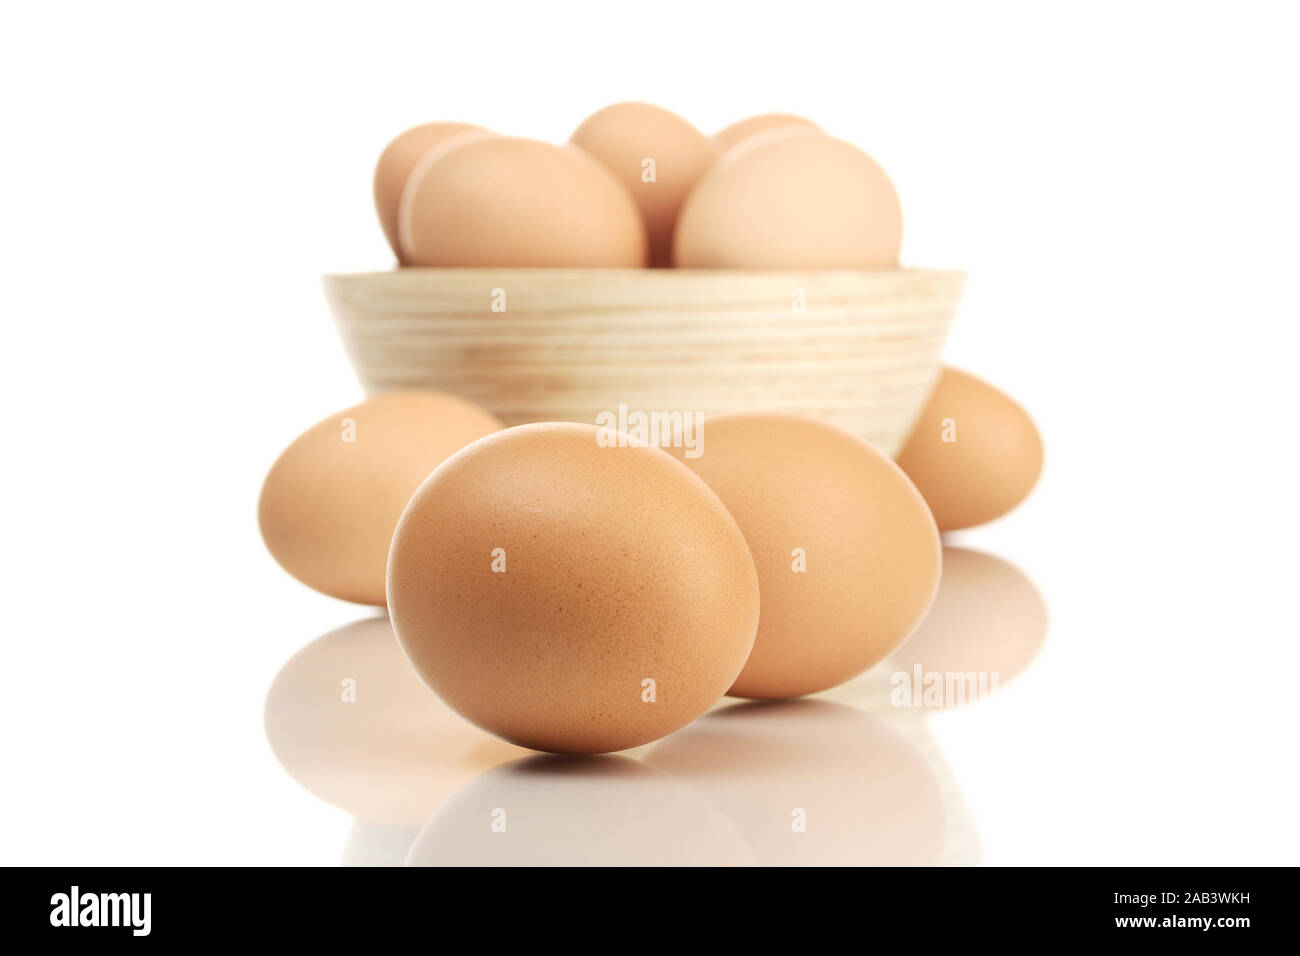 Schüssel mit frischen Eiern |Bowl with fresh eggs| Stock Photo